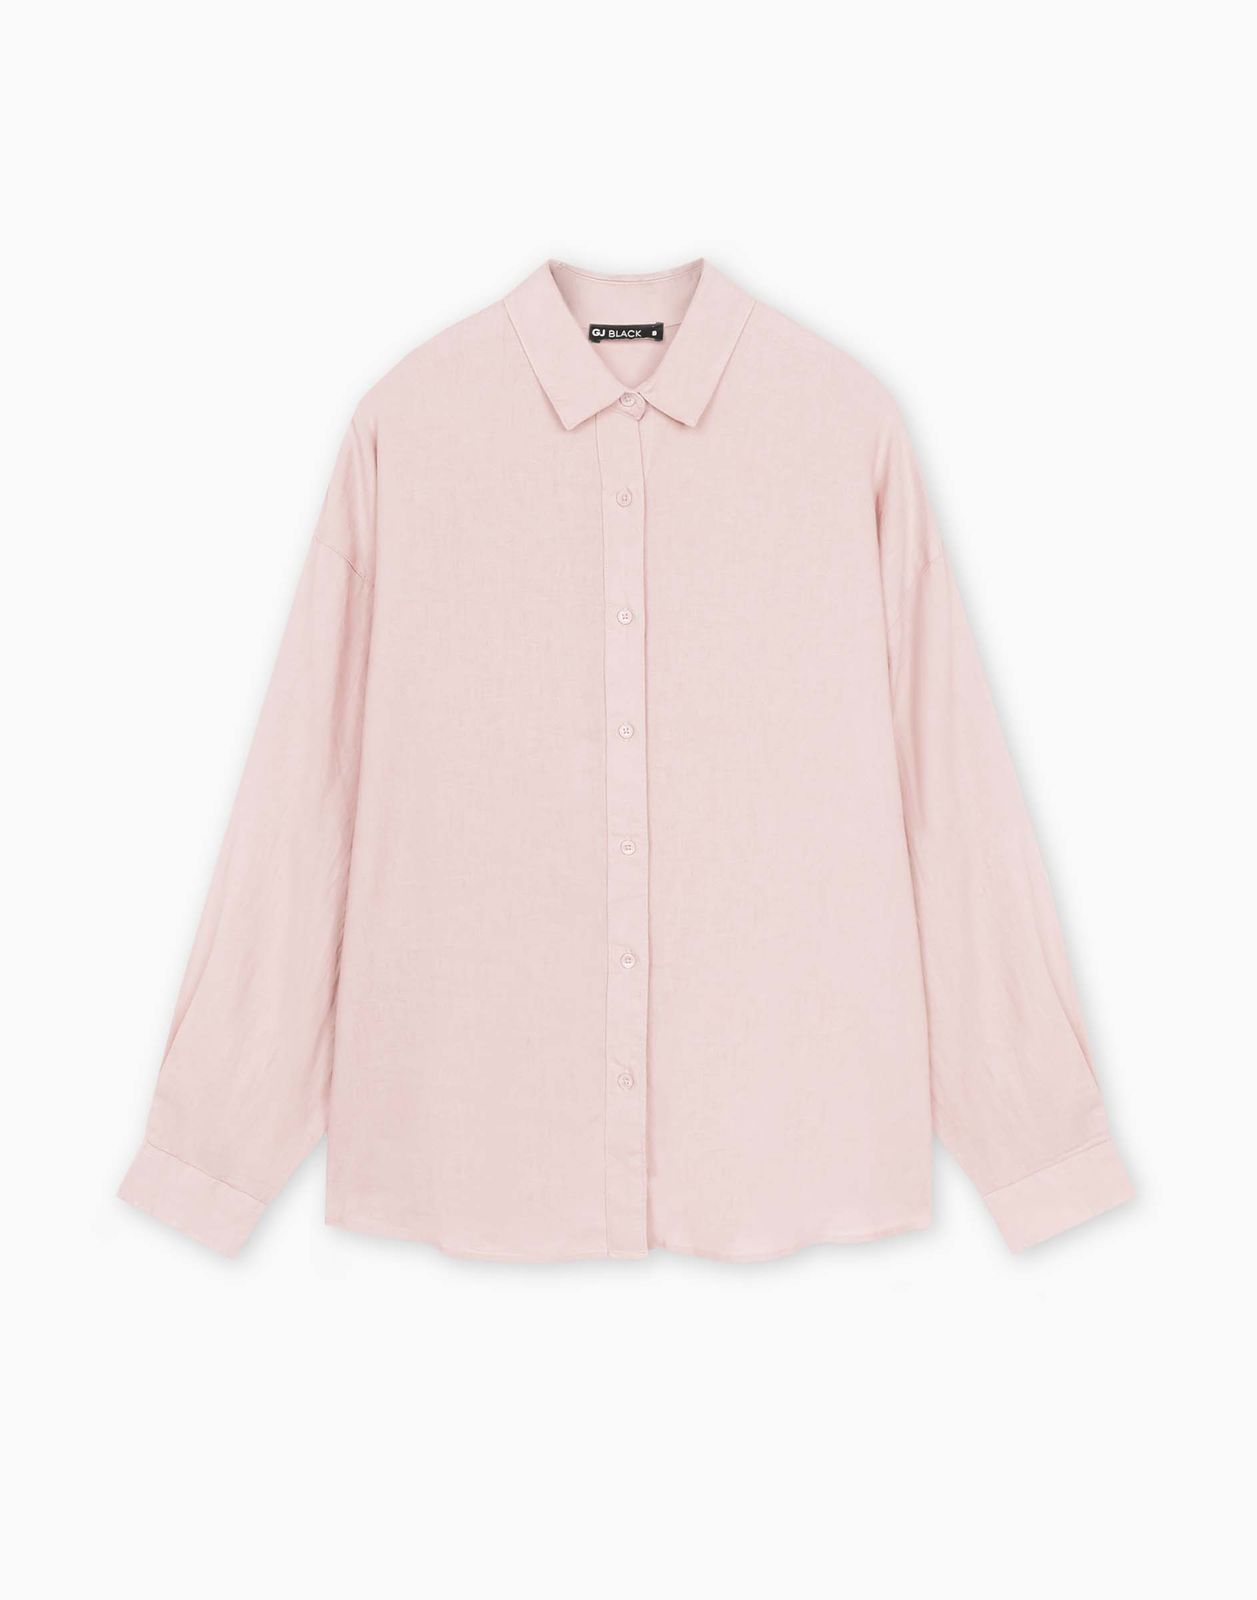 Рубашка женская Gloria Jeans GWT003968 светло-розовый S/170